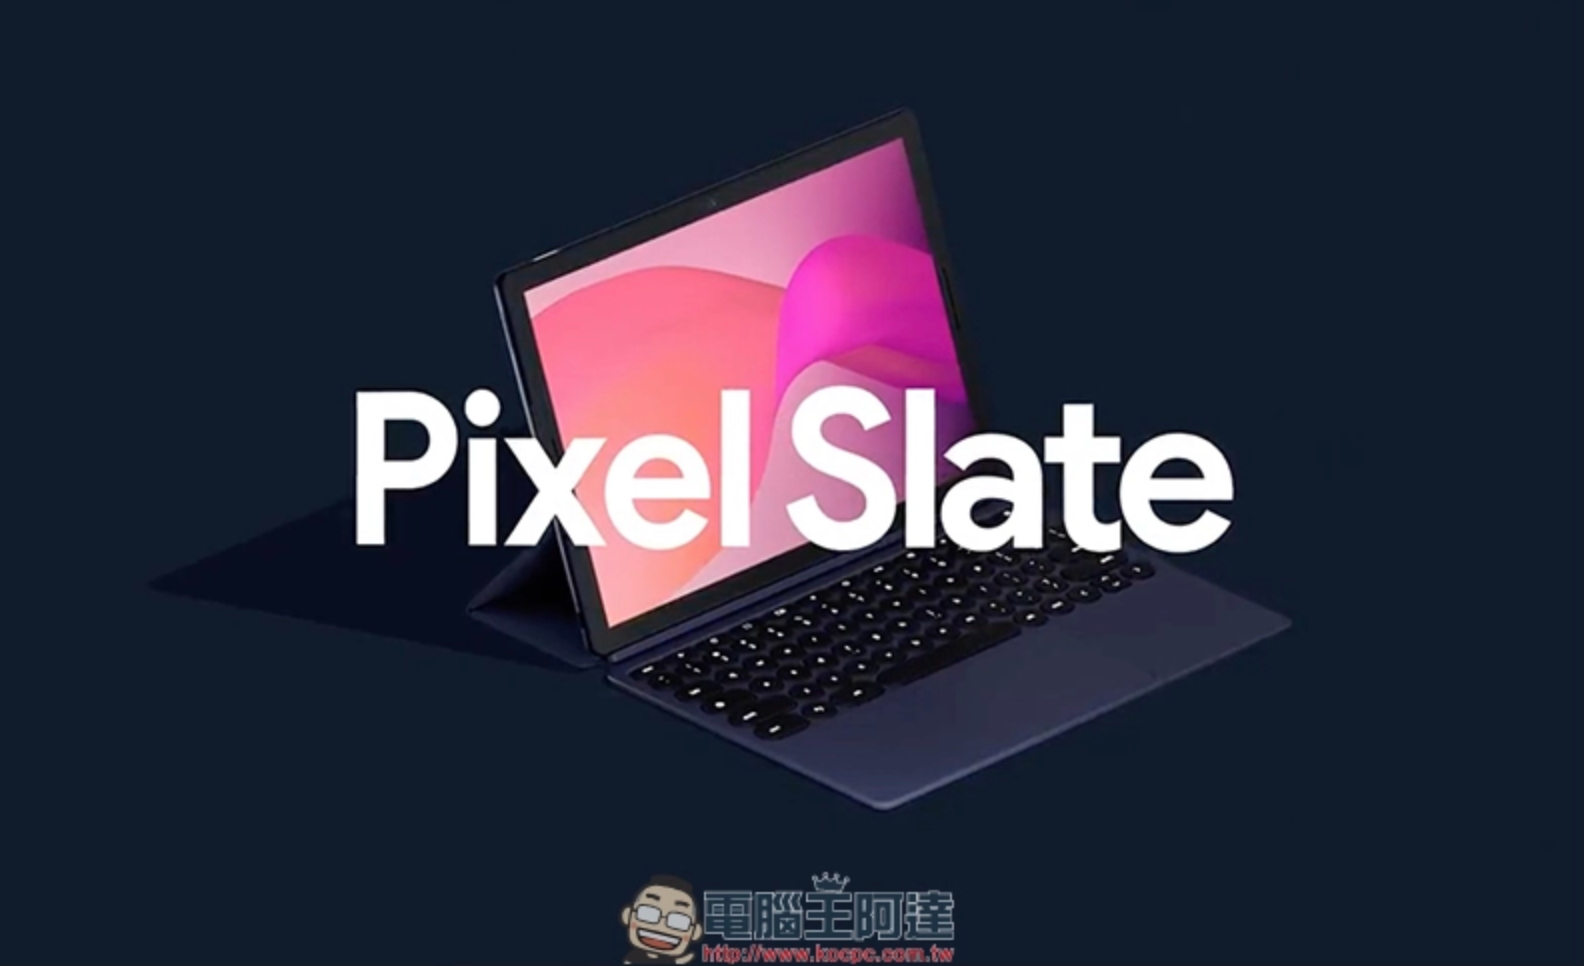 Pixel Slate 平板電腦